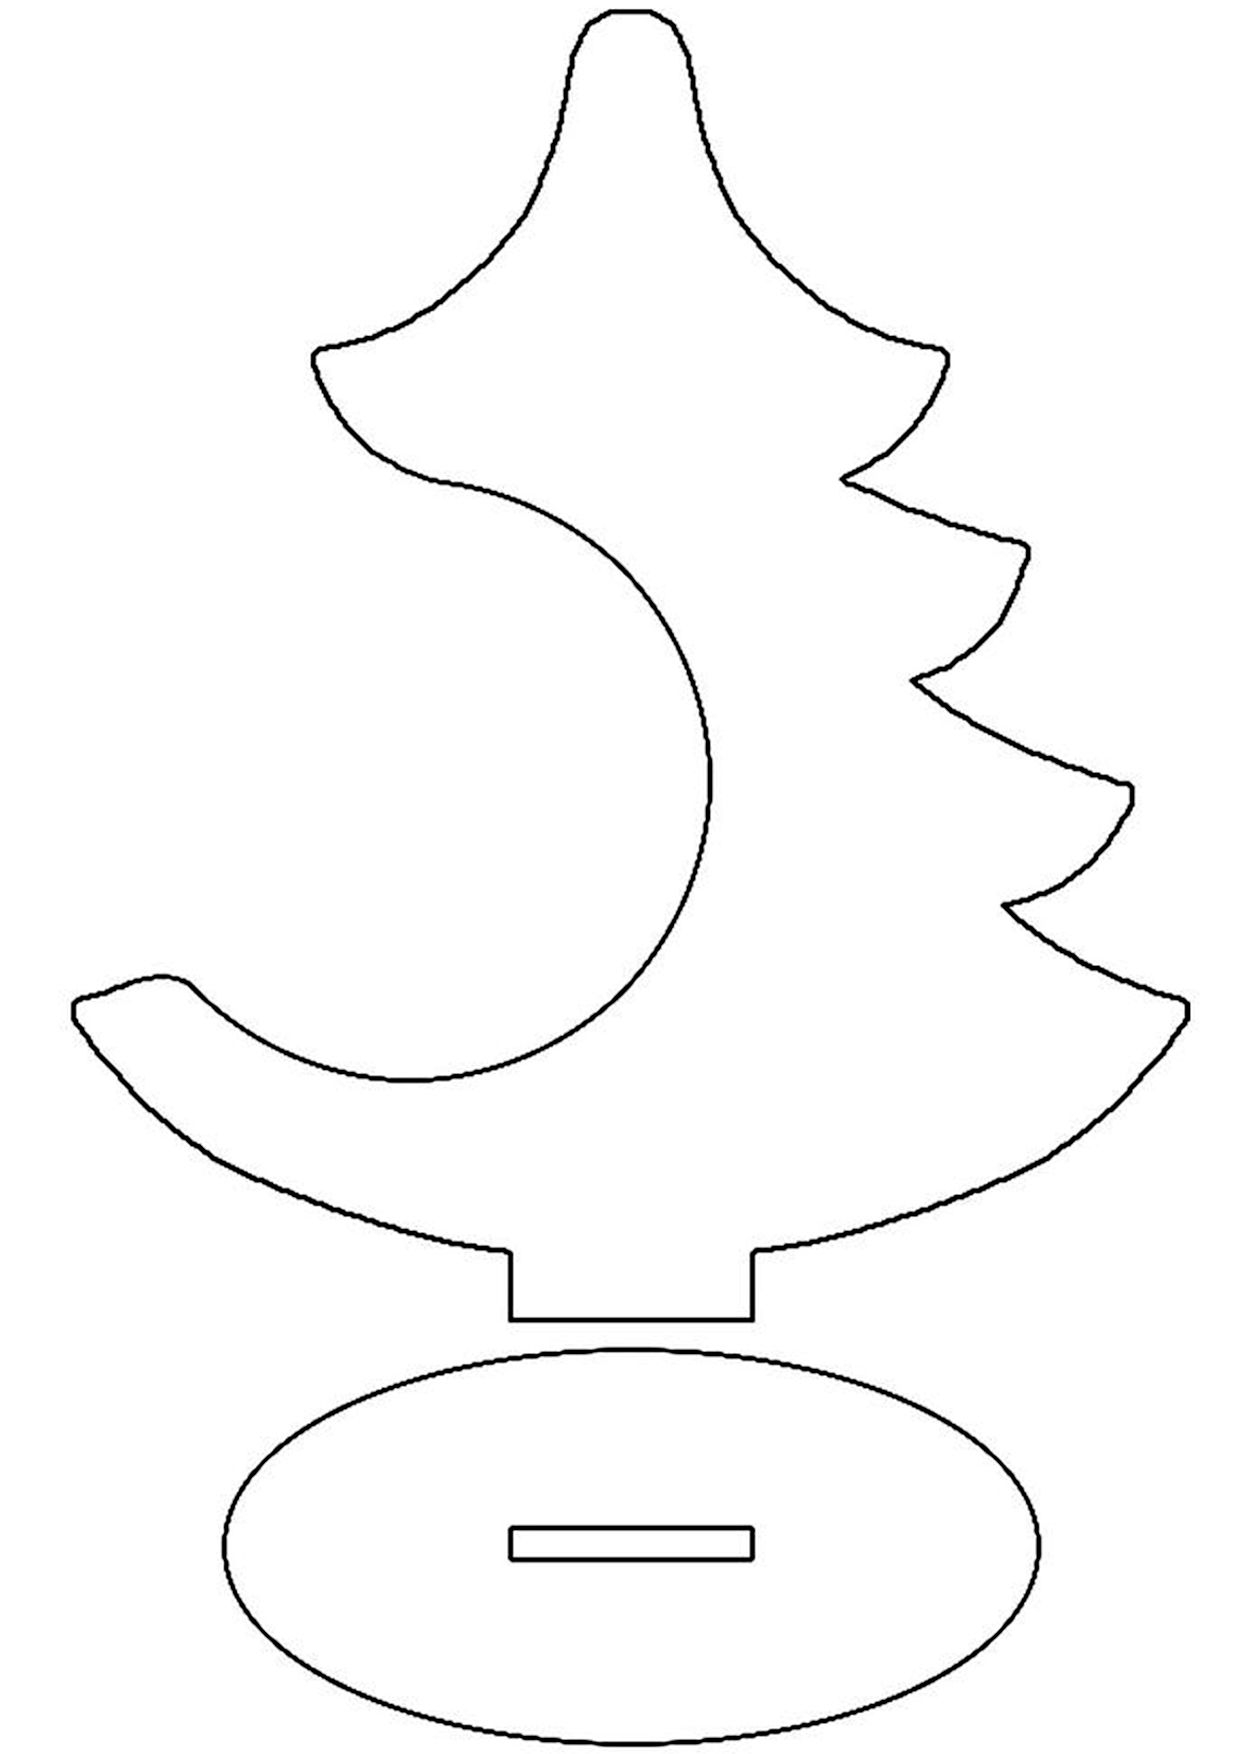 Шаблон елки для вырезания из бумаги: скачать и распечатать — жк-вершина-сайт.рф